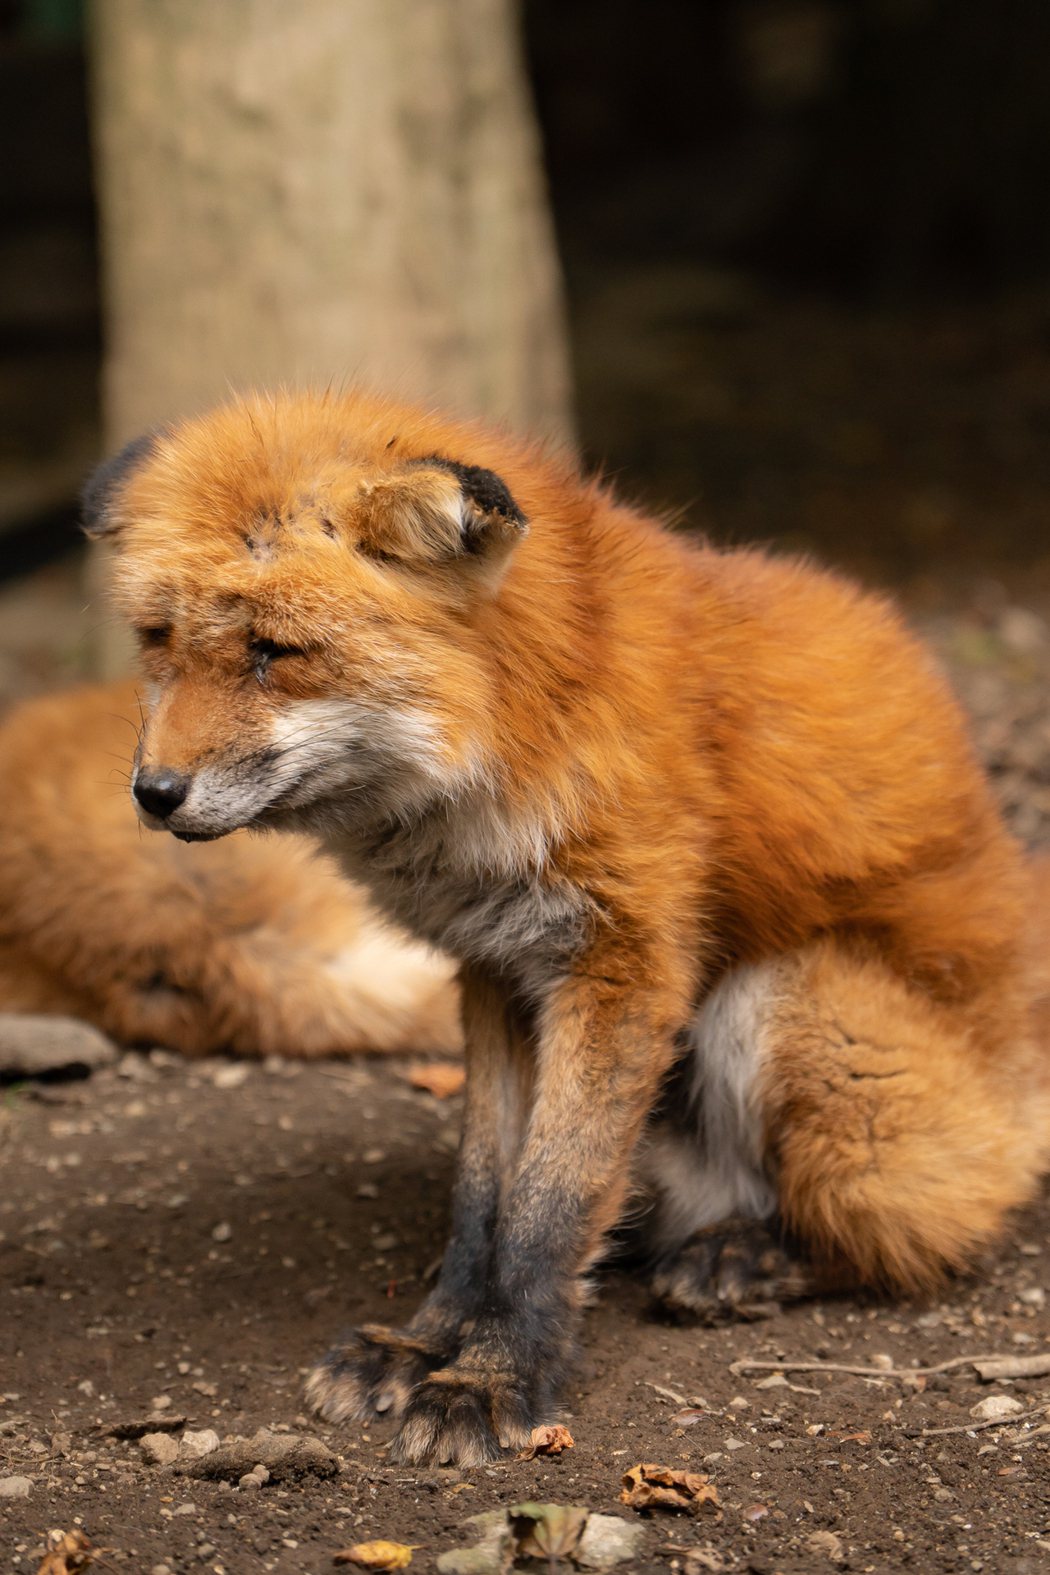 一名網友到動物園觀光時，看到狐狸展示區的一隻小狐狸臉憂愁的異於常狐，緊皺眉頭憂鬱哭出來的樣子完全不像一名孩子應該有的表現。 (圖/取自推特)